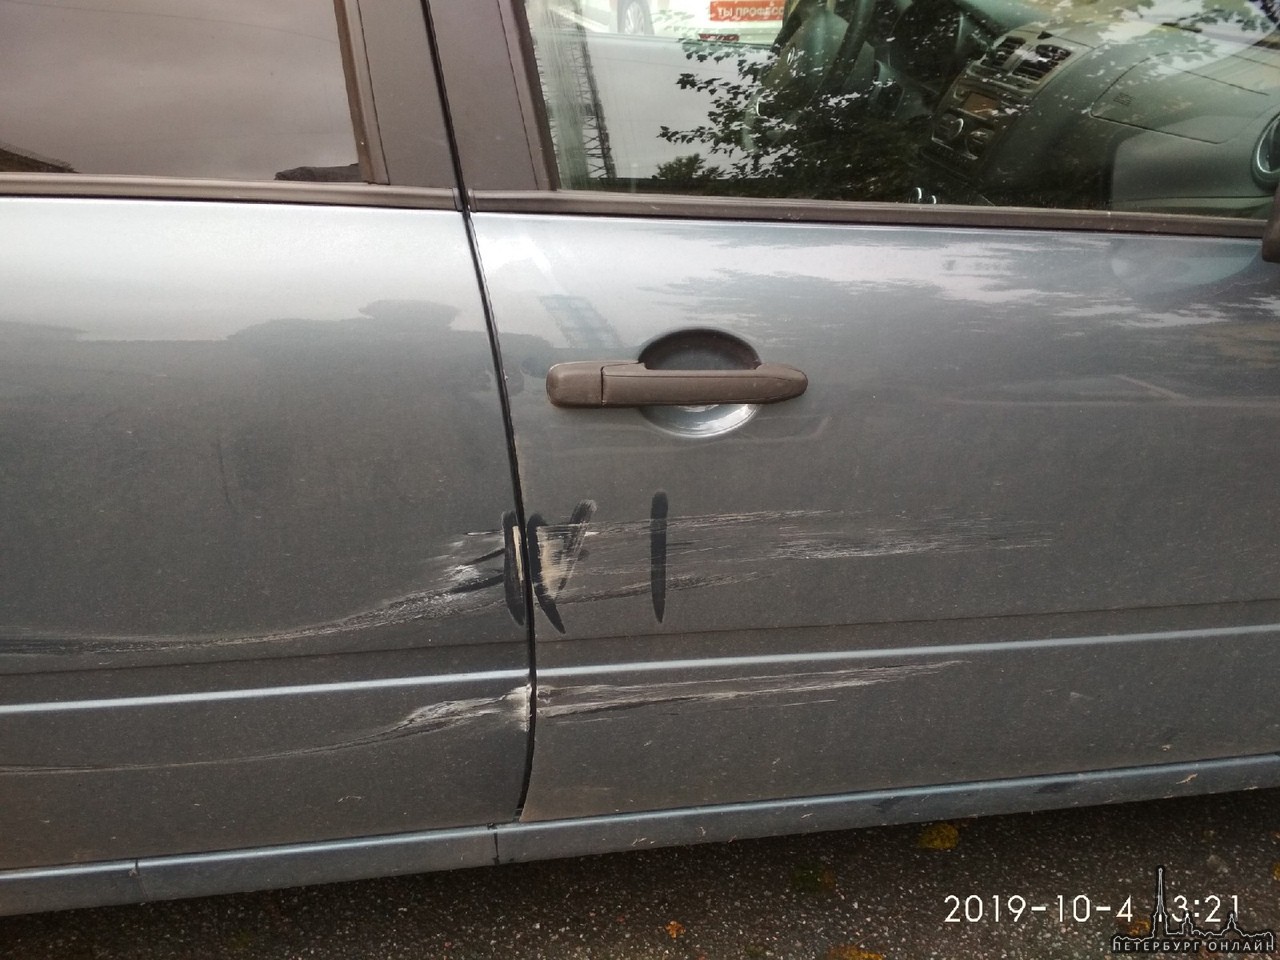 Вчера я ехал по Финскому переулку, Водитель Audi сдавал задом с парковосного места и ударил мой ав...